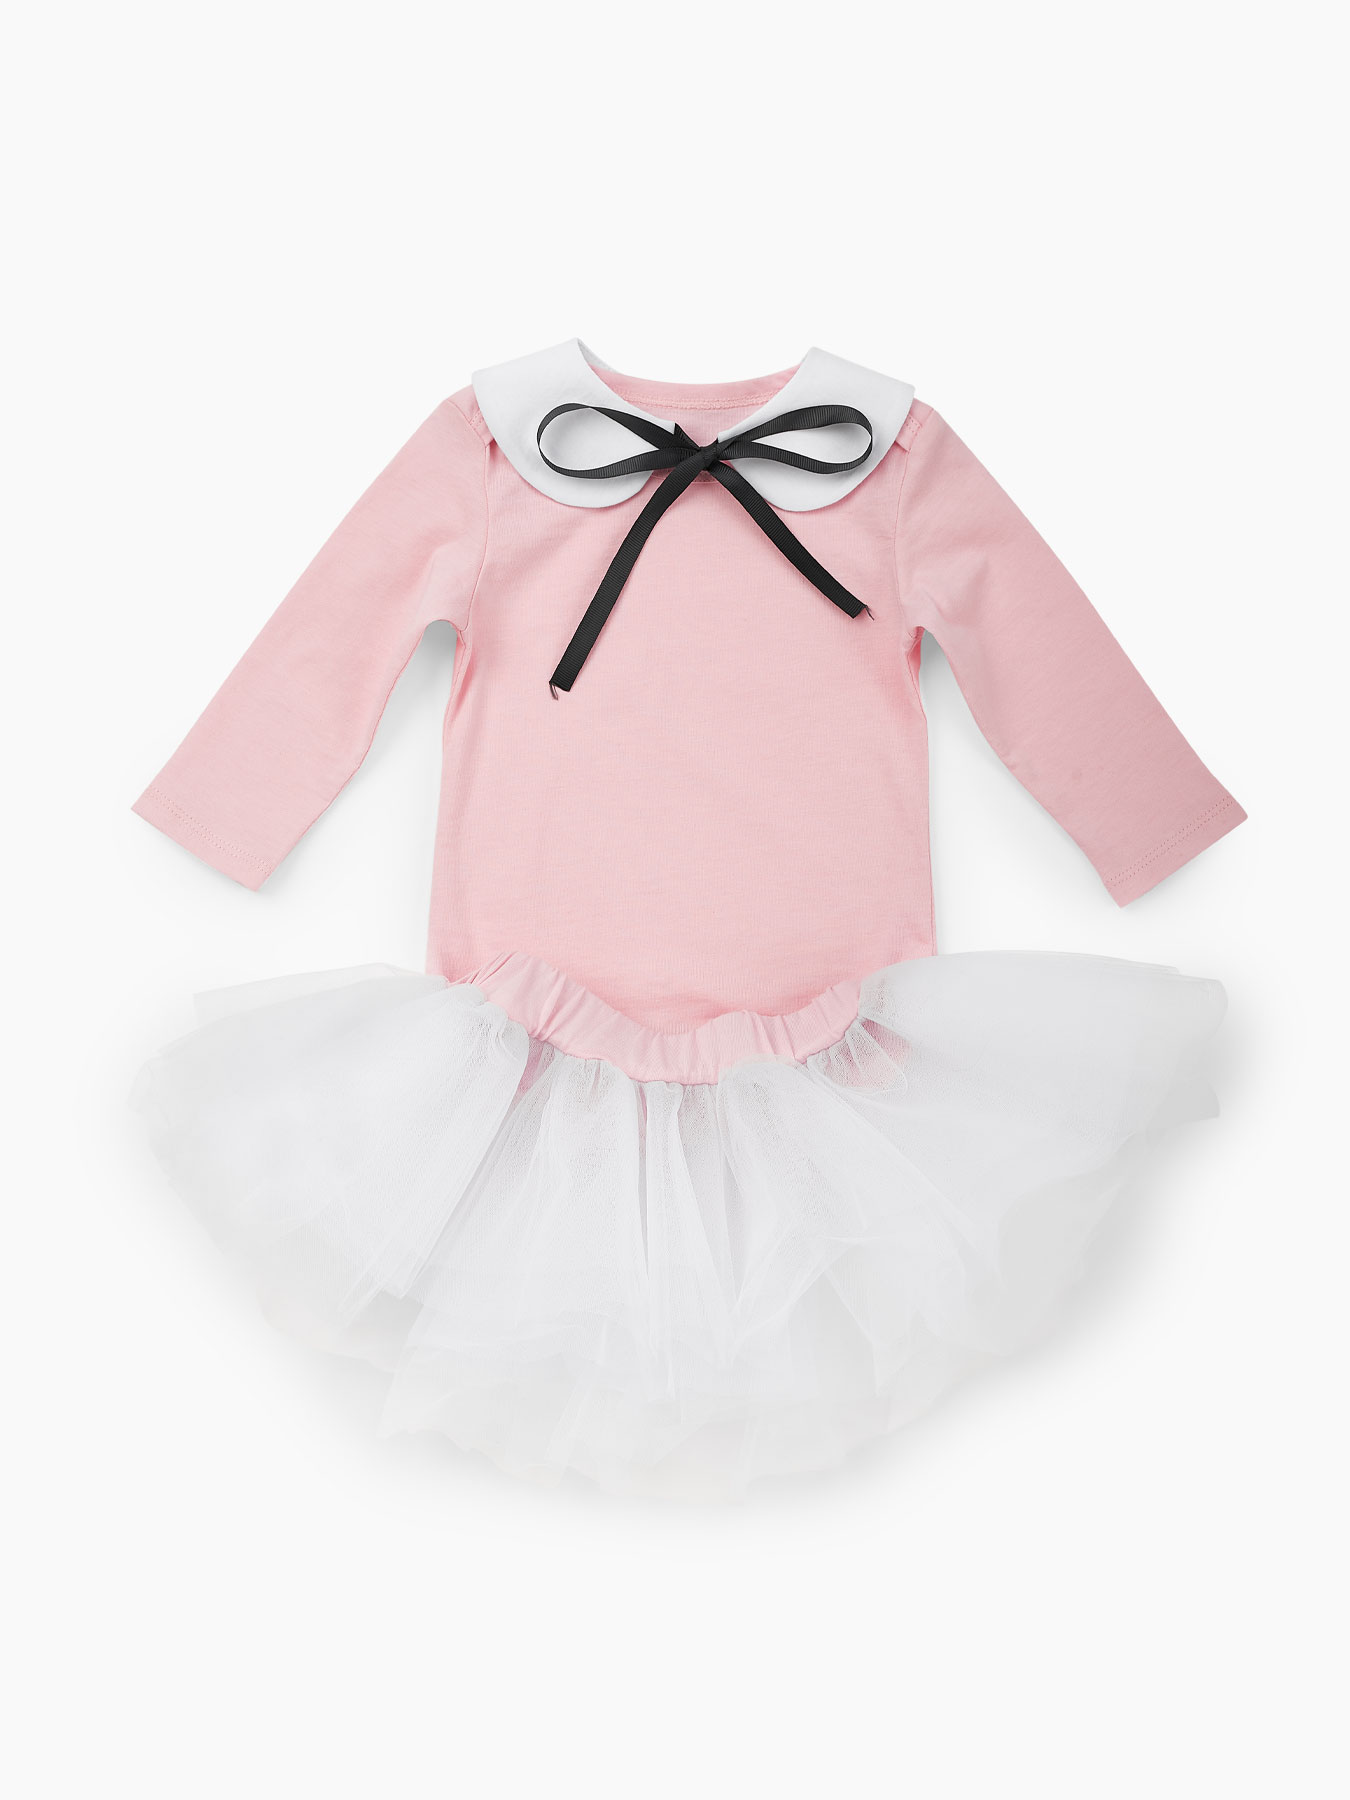 фото Комплект для девочек: боди, леггинсы и юбка happy baby розовый, белый 68